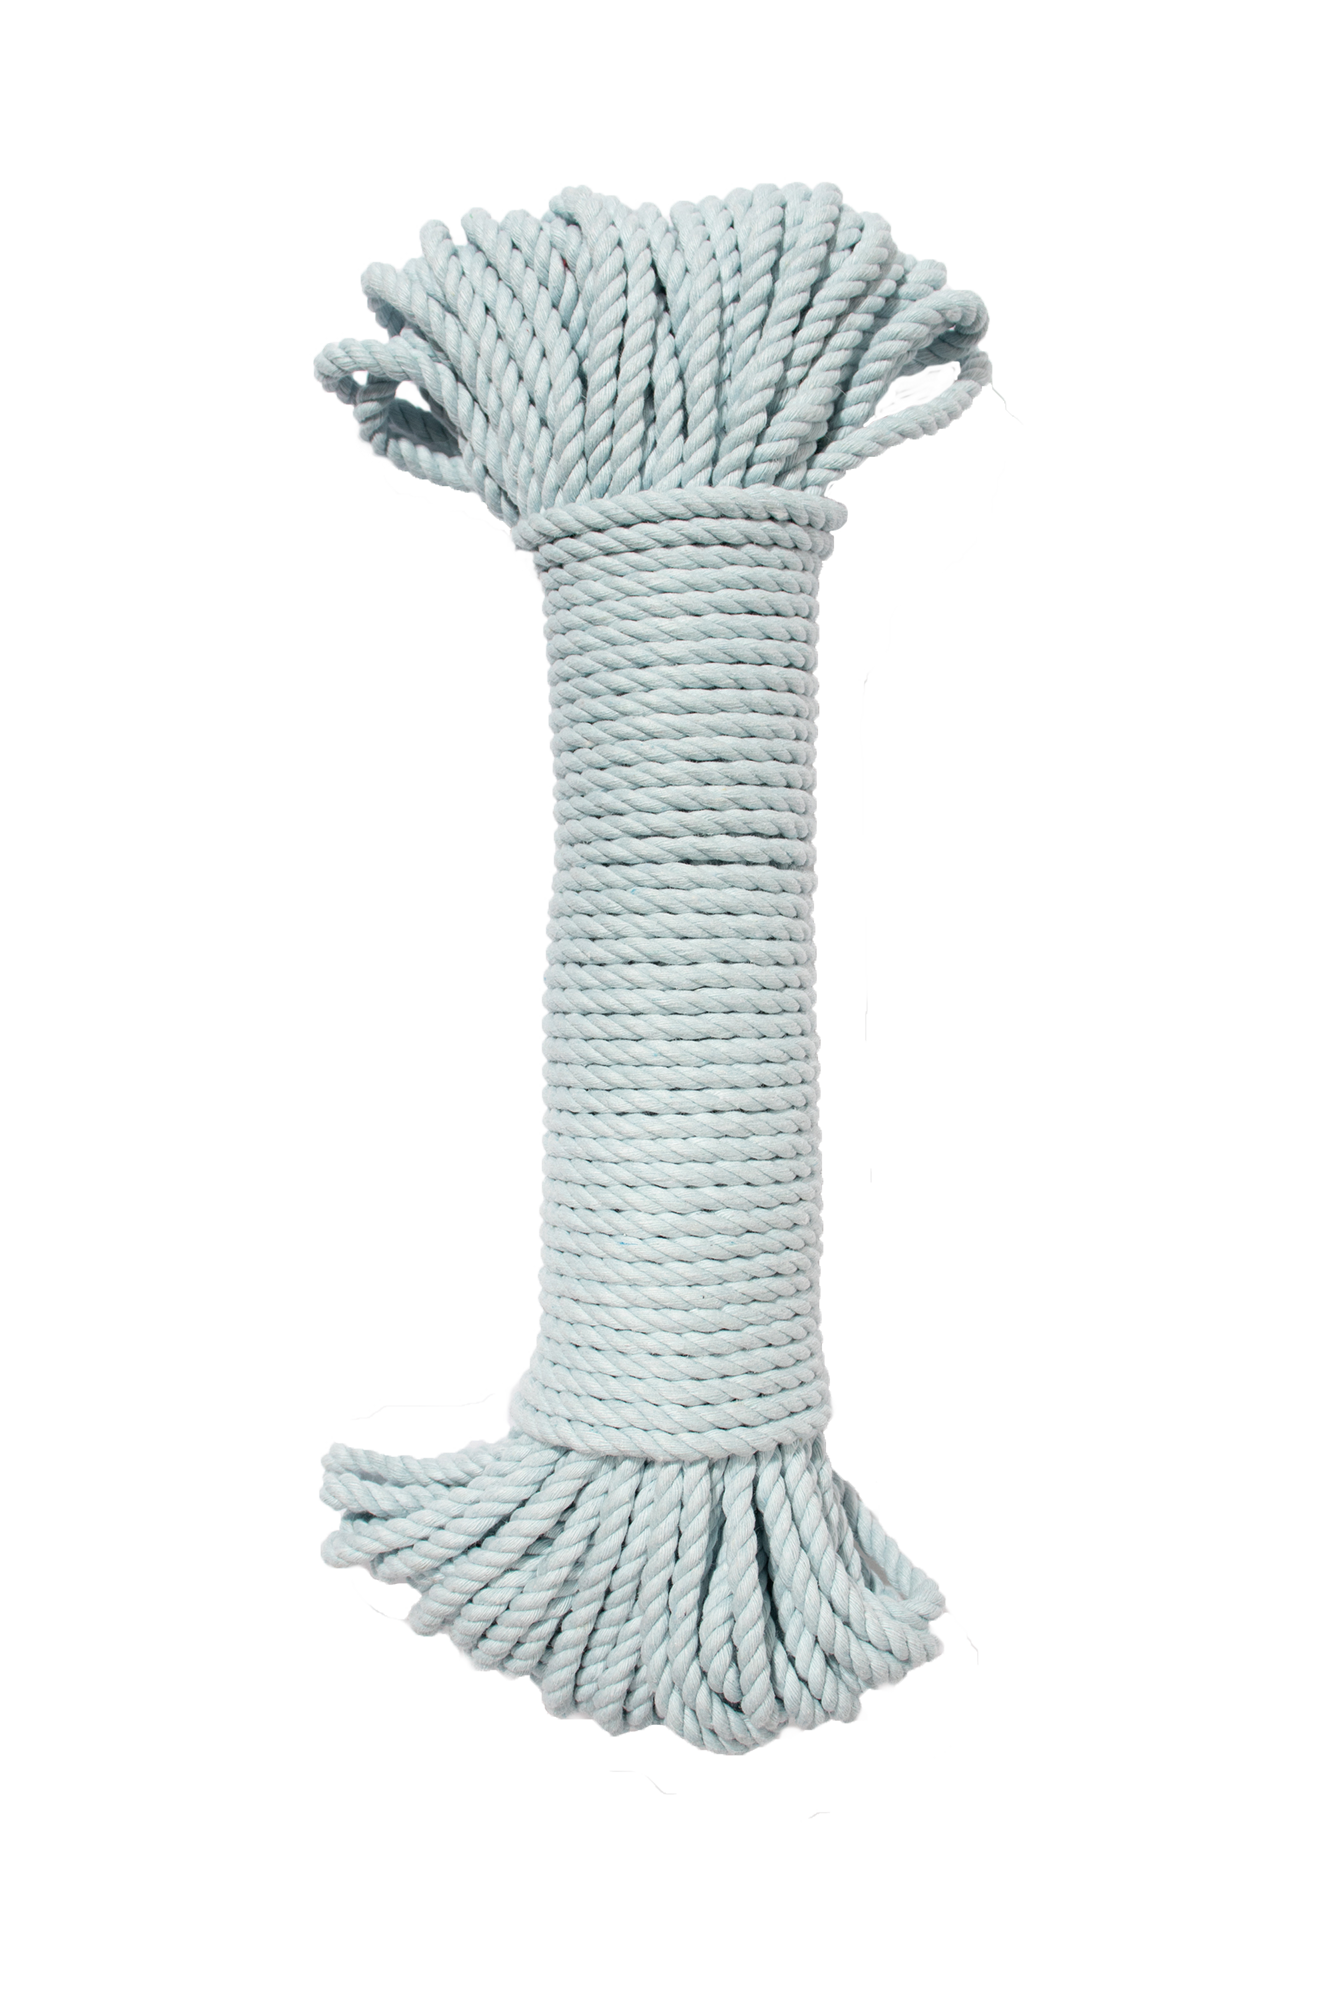 5mm Cotton Rope 600 ft - macrame materials – MODERN MACRAMÉ